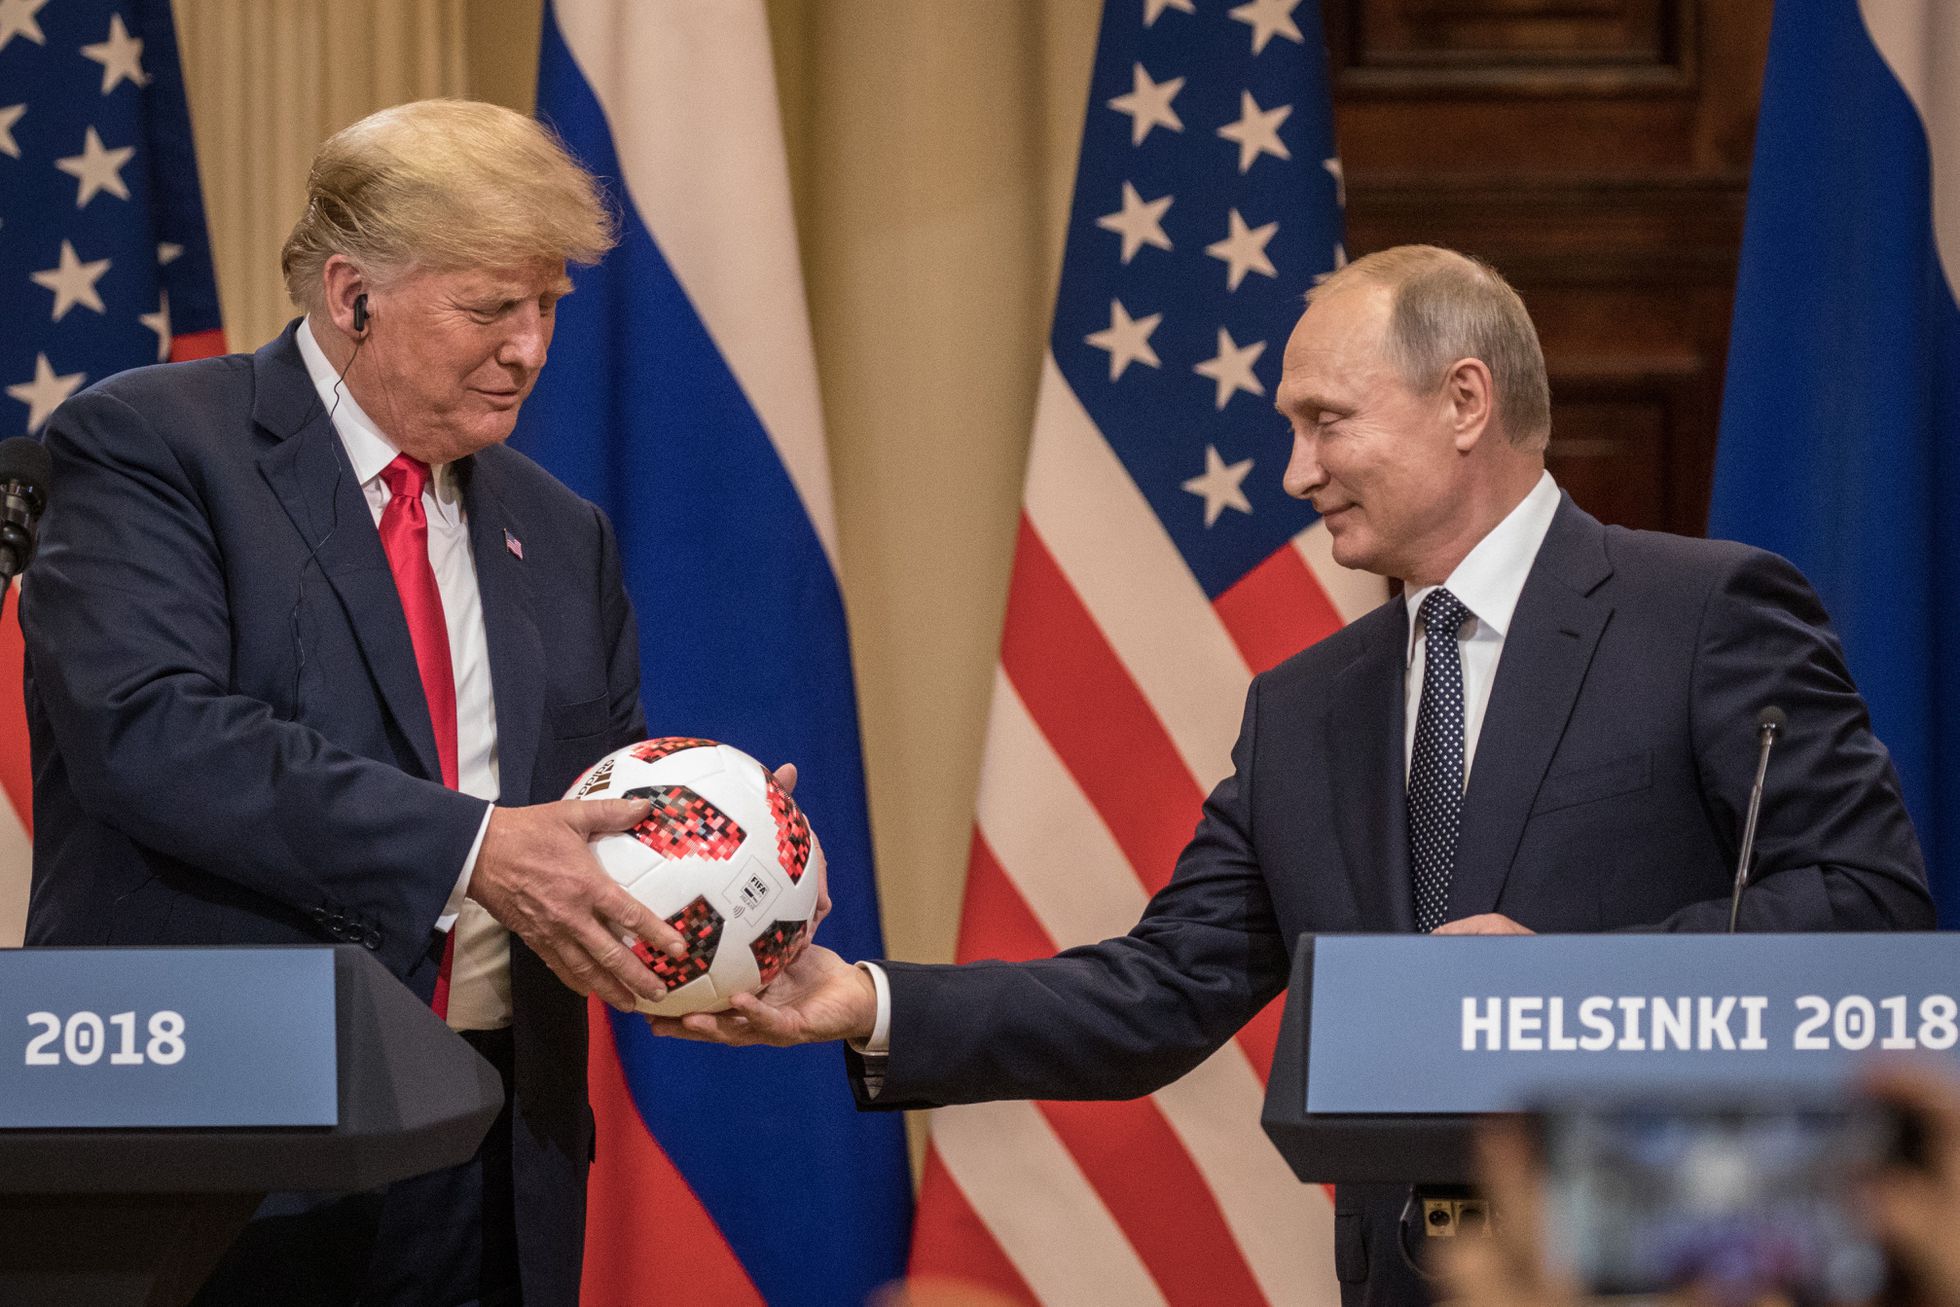 El presidente Trump y el presidente Putin celebran una conferencia de prensa conjunta después de su cumbre, el 16 de julio de 2018 en Helsinki, Finlandia. Los dos líderes discutieron sobre variedad de temas, incluida la colusión de las elecciones estadounidenses de 2016. 
